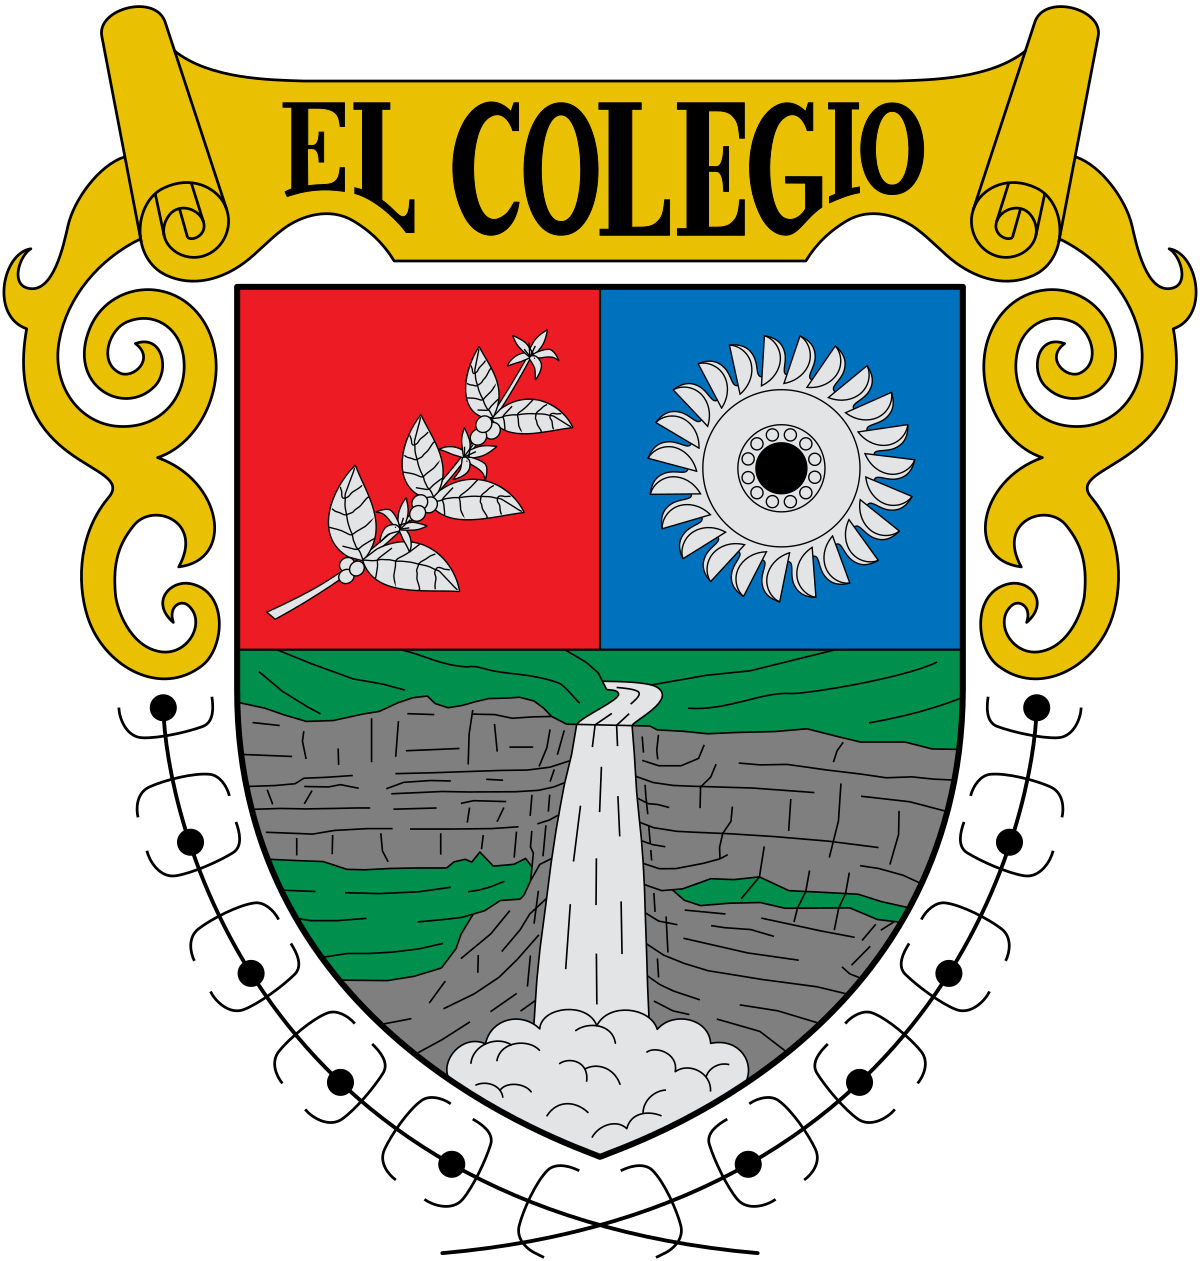 Continente traición Fiel Archivo:Escudo de El Colegio.svg - Wikipedia, la enciclopedia libre